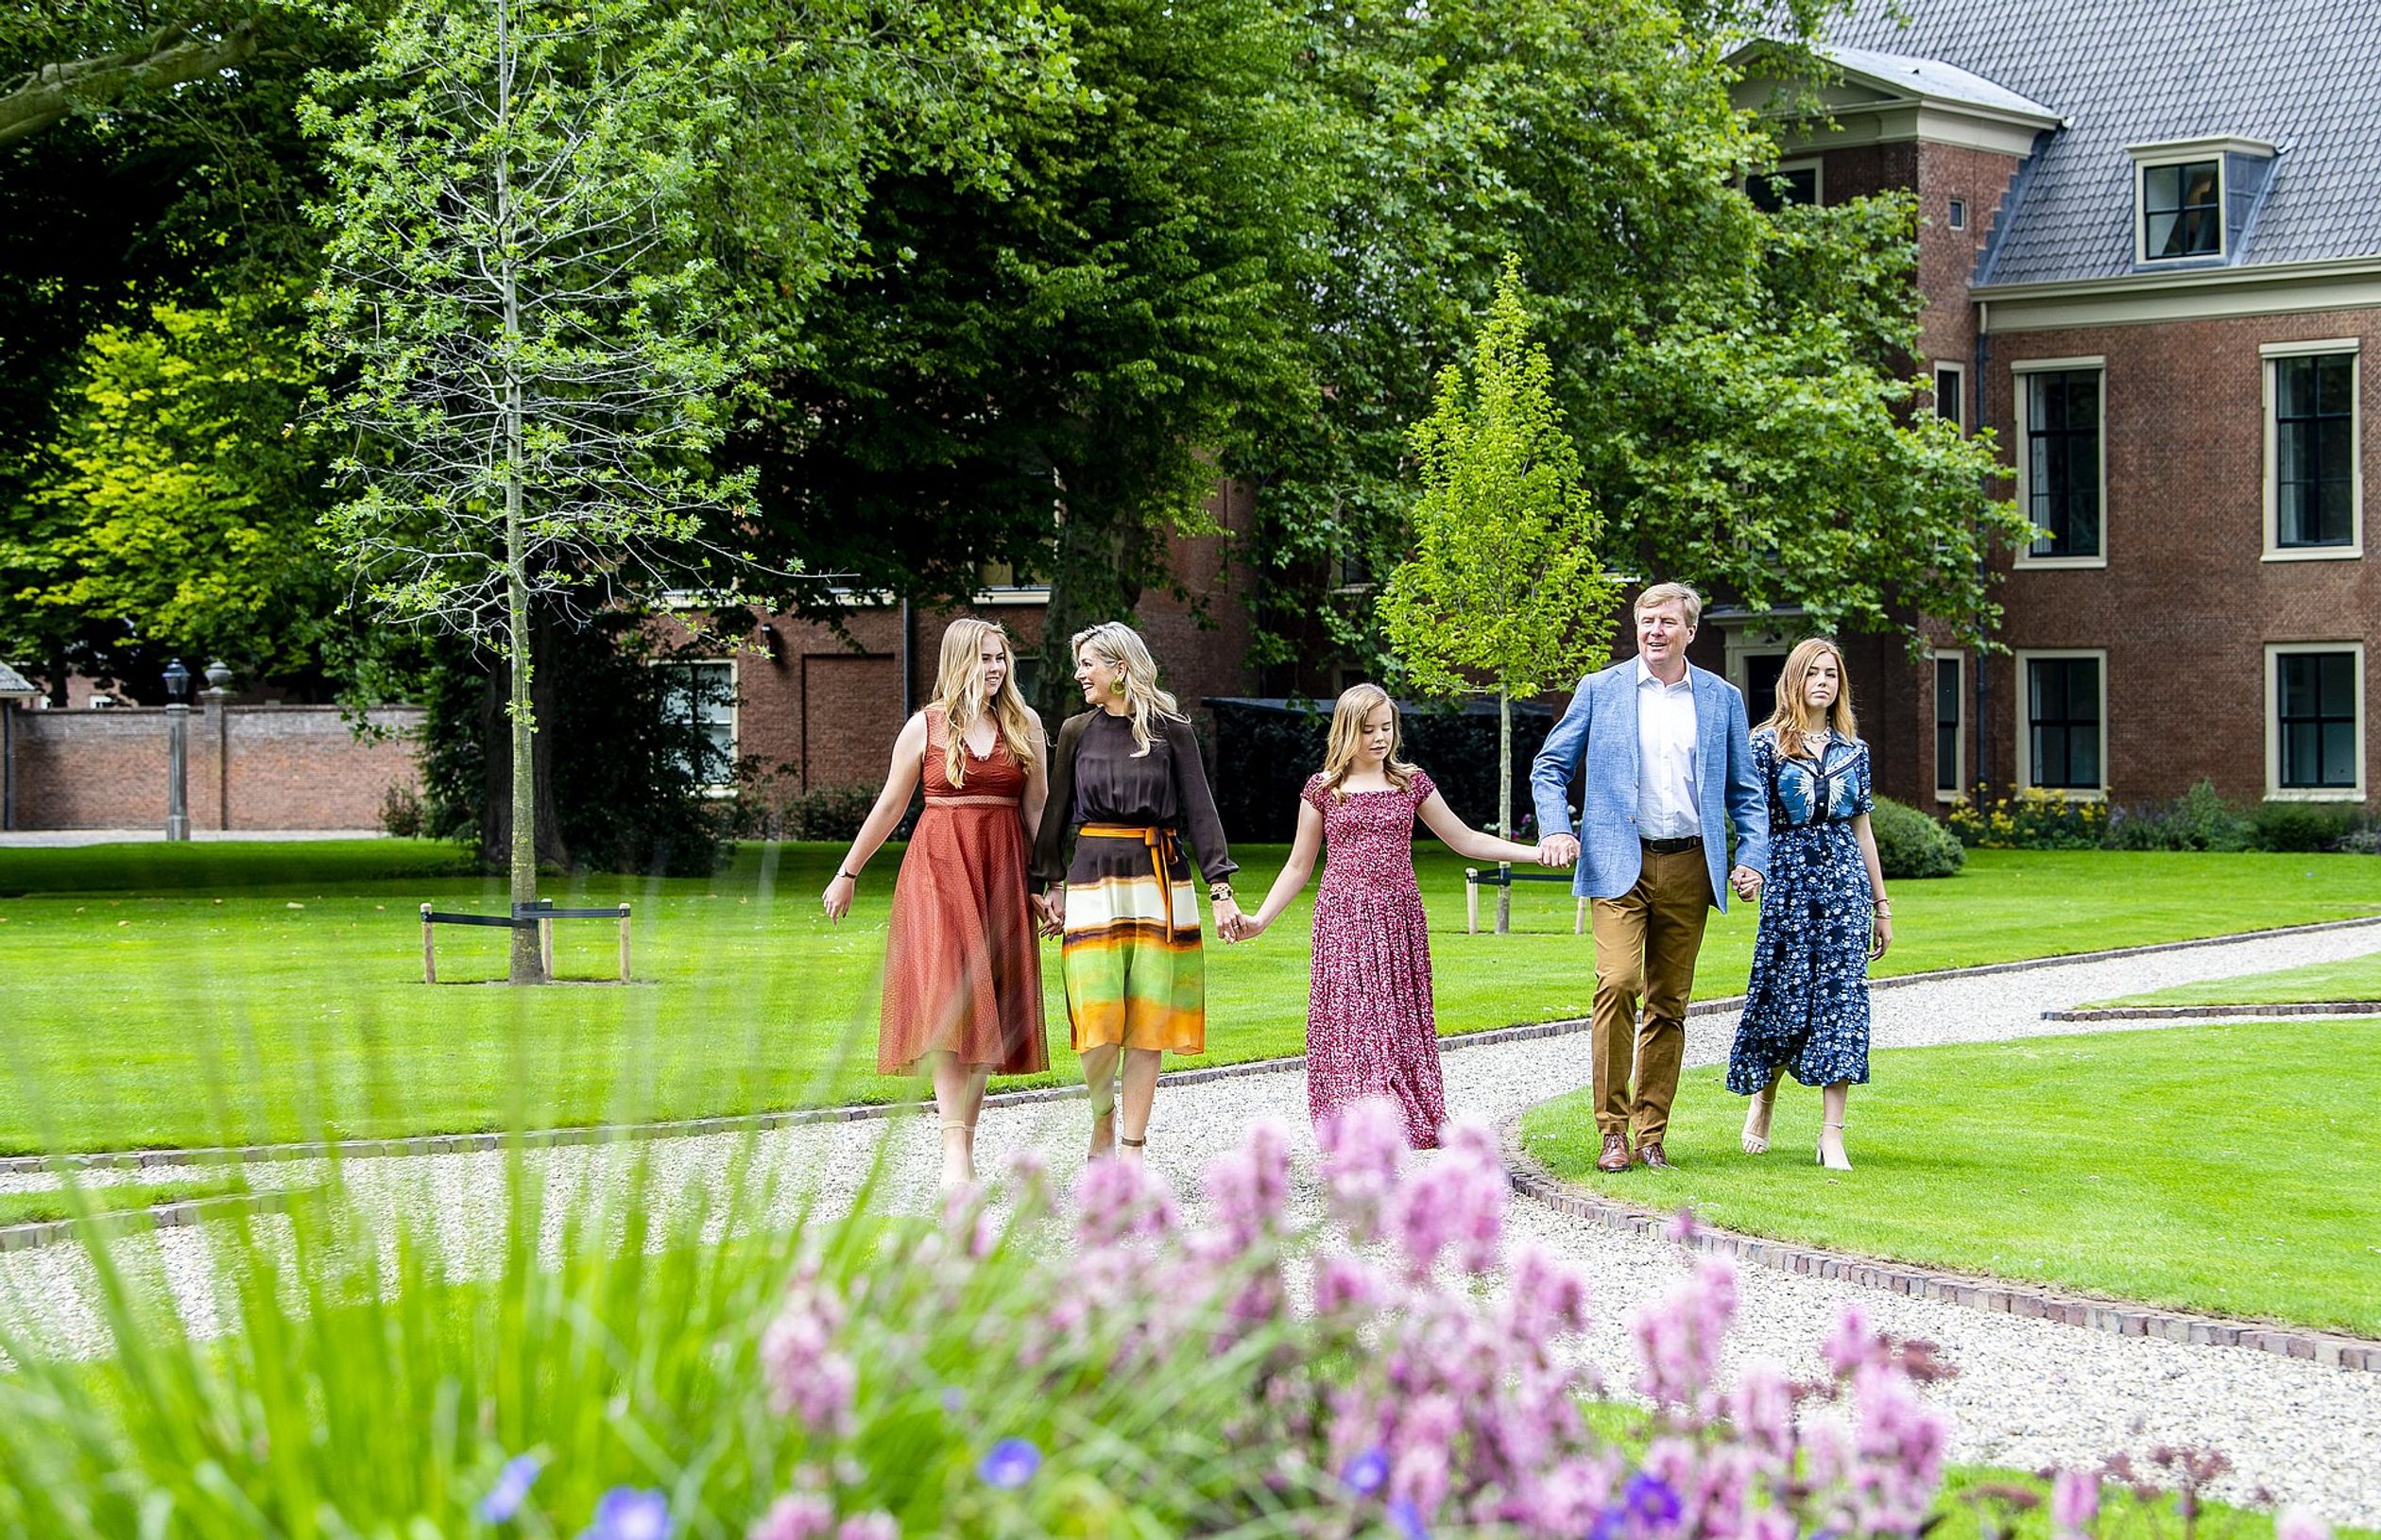 2019: Jaarlijkse koninklijke fotosessie, voor het eerst in de tuin van Huis Ten Bosch.